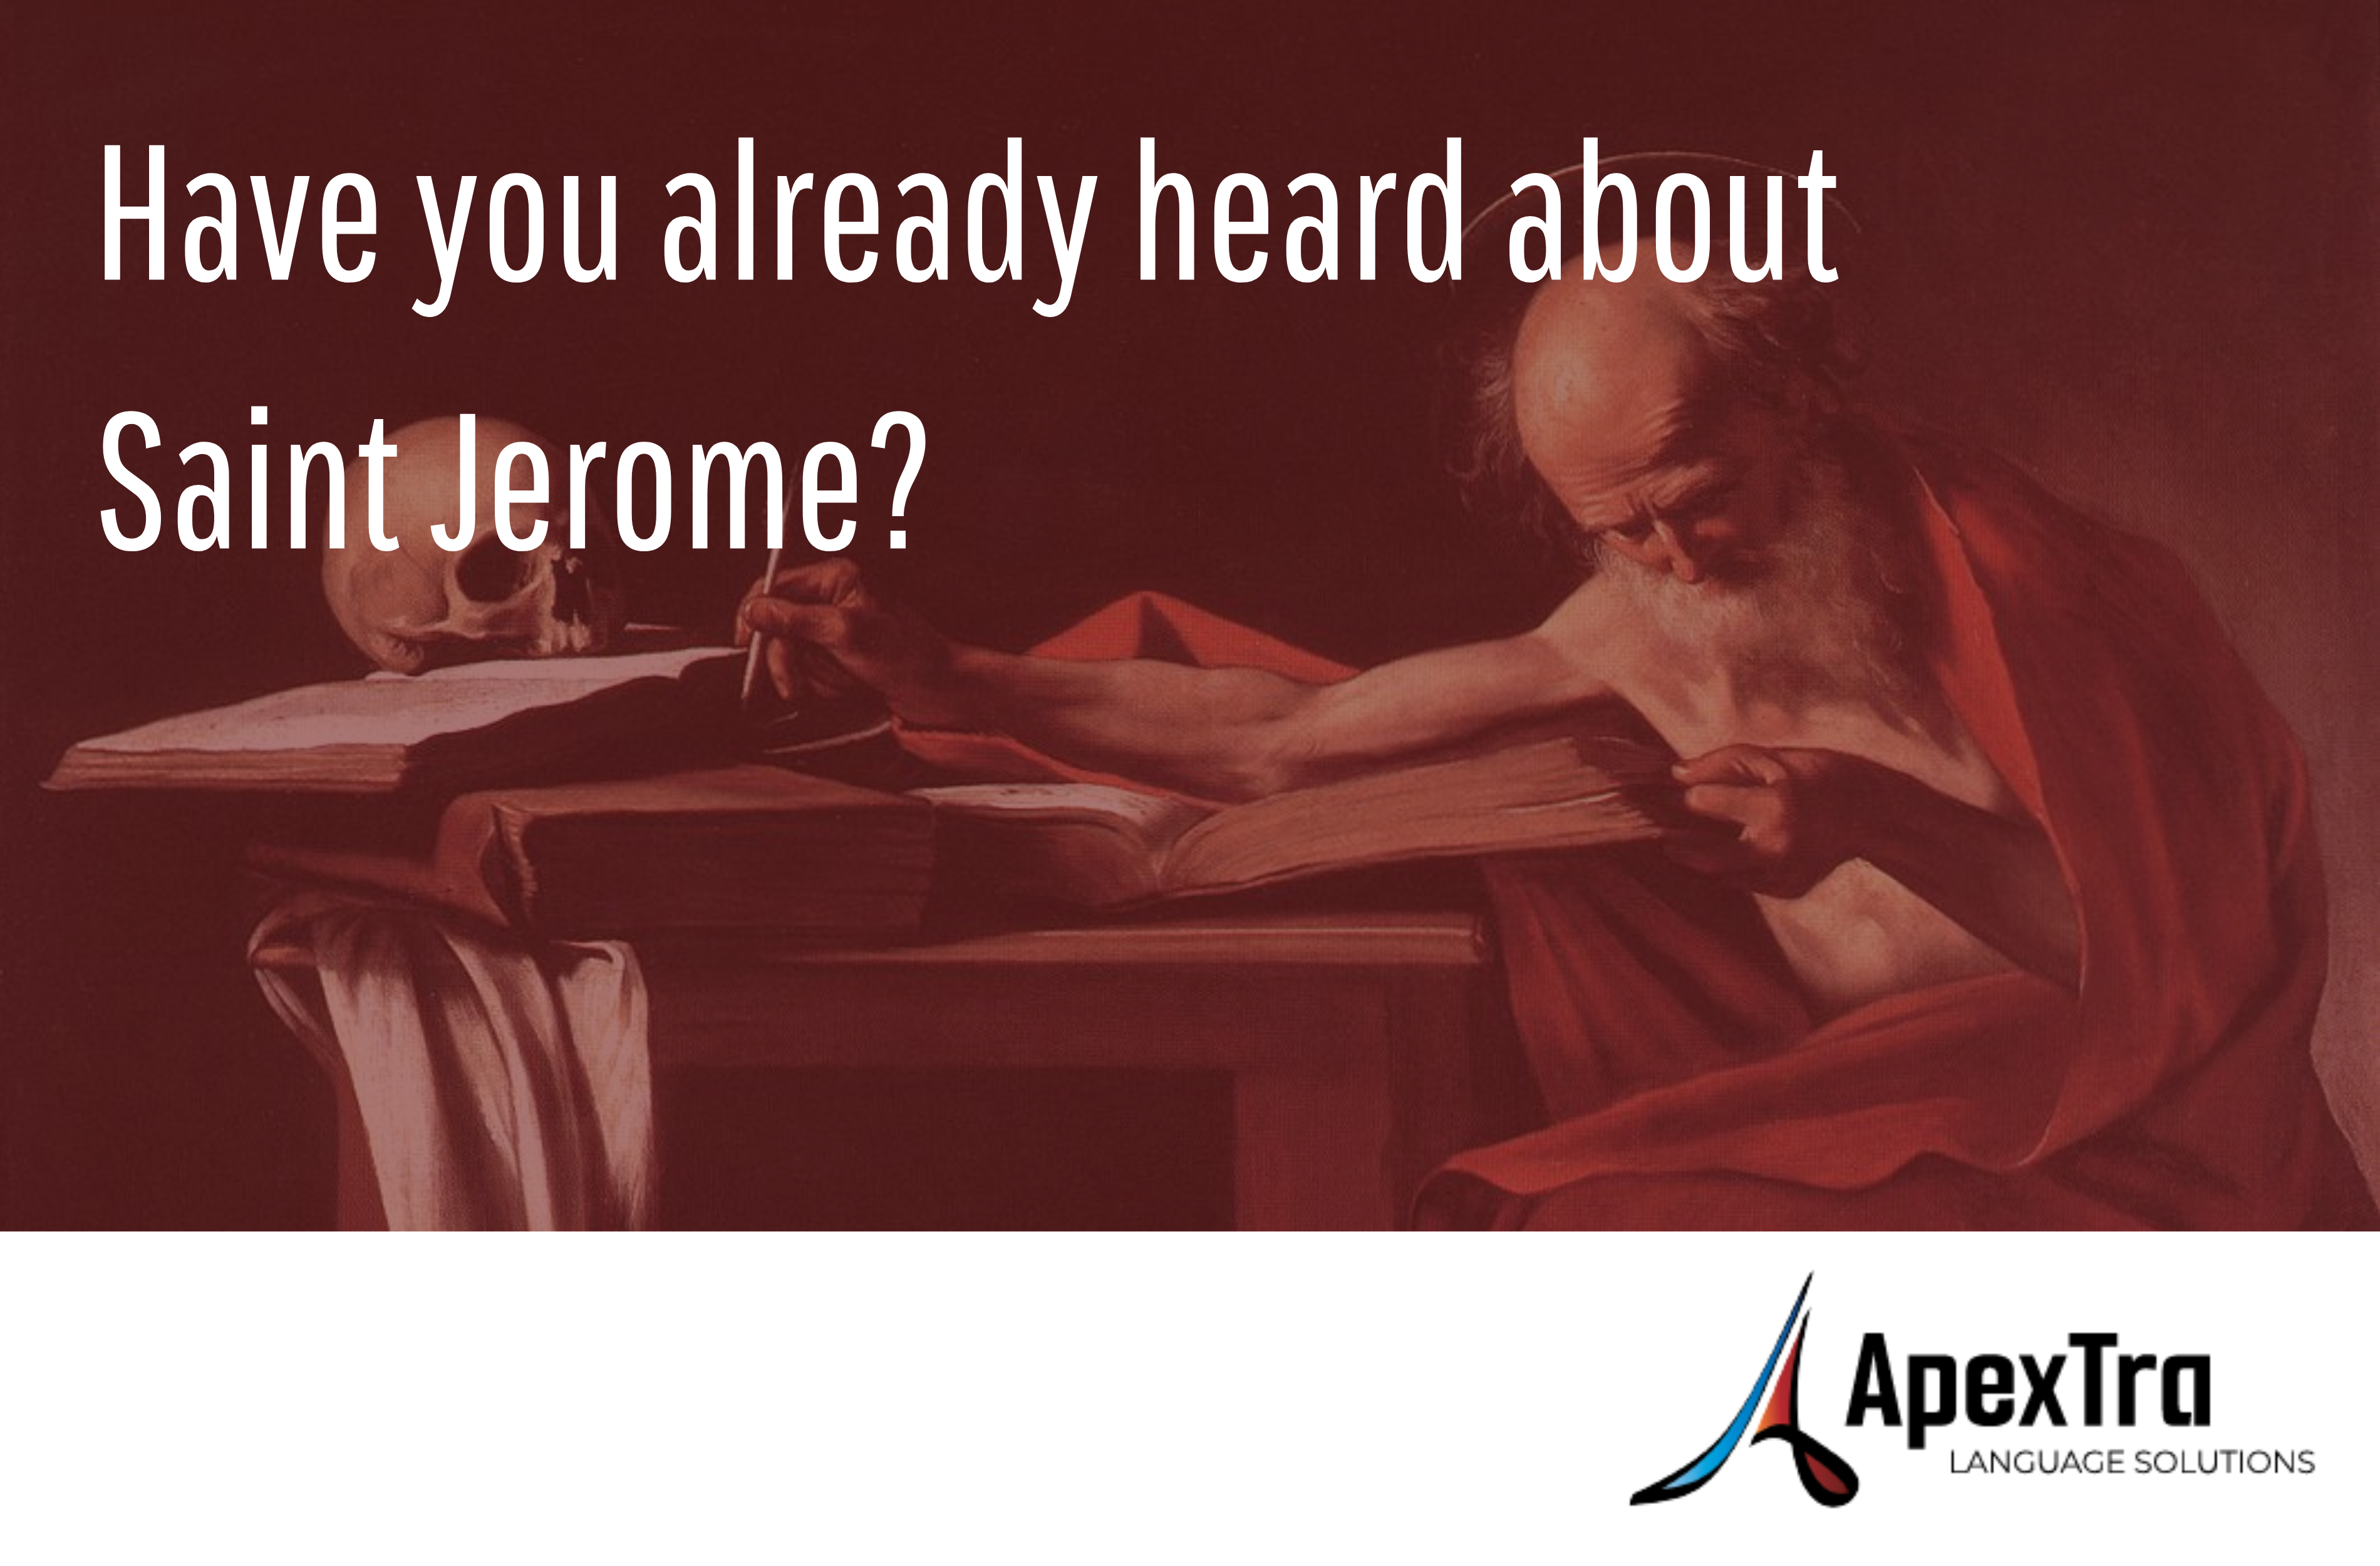 Connaissez-vous Saint Jérôme ? Logo ApexTra et tableau représentant Saint Jérôme en fond.